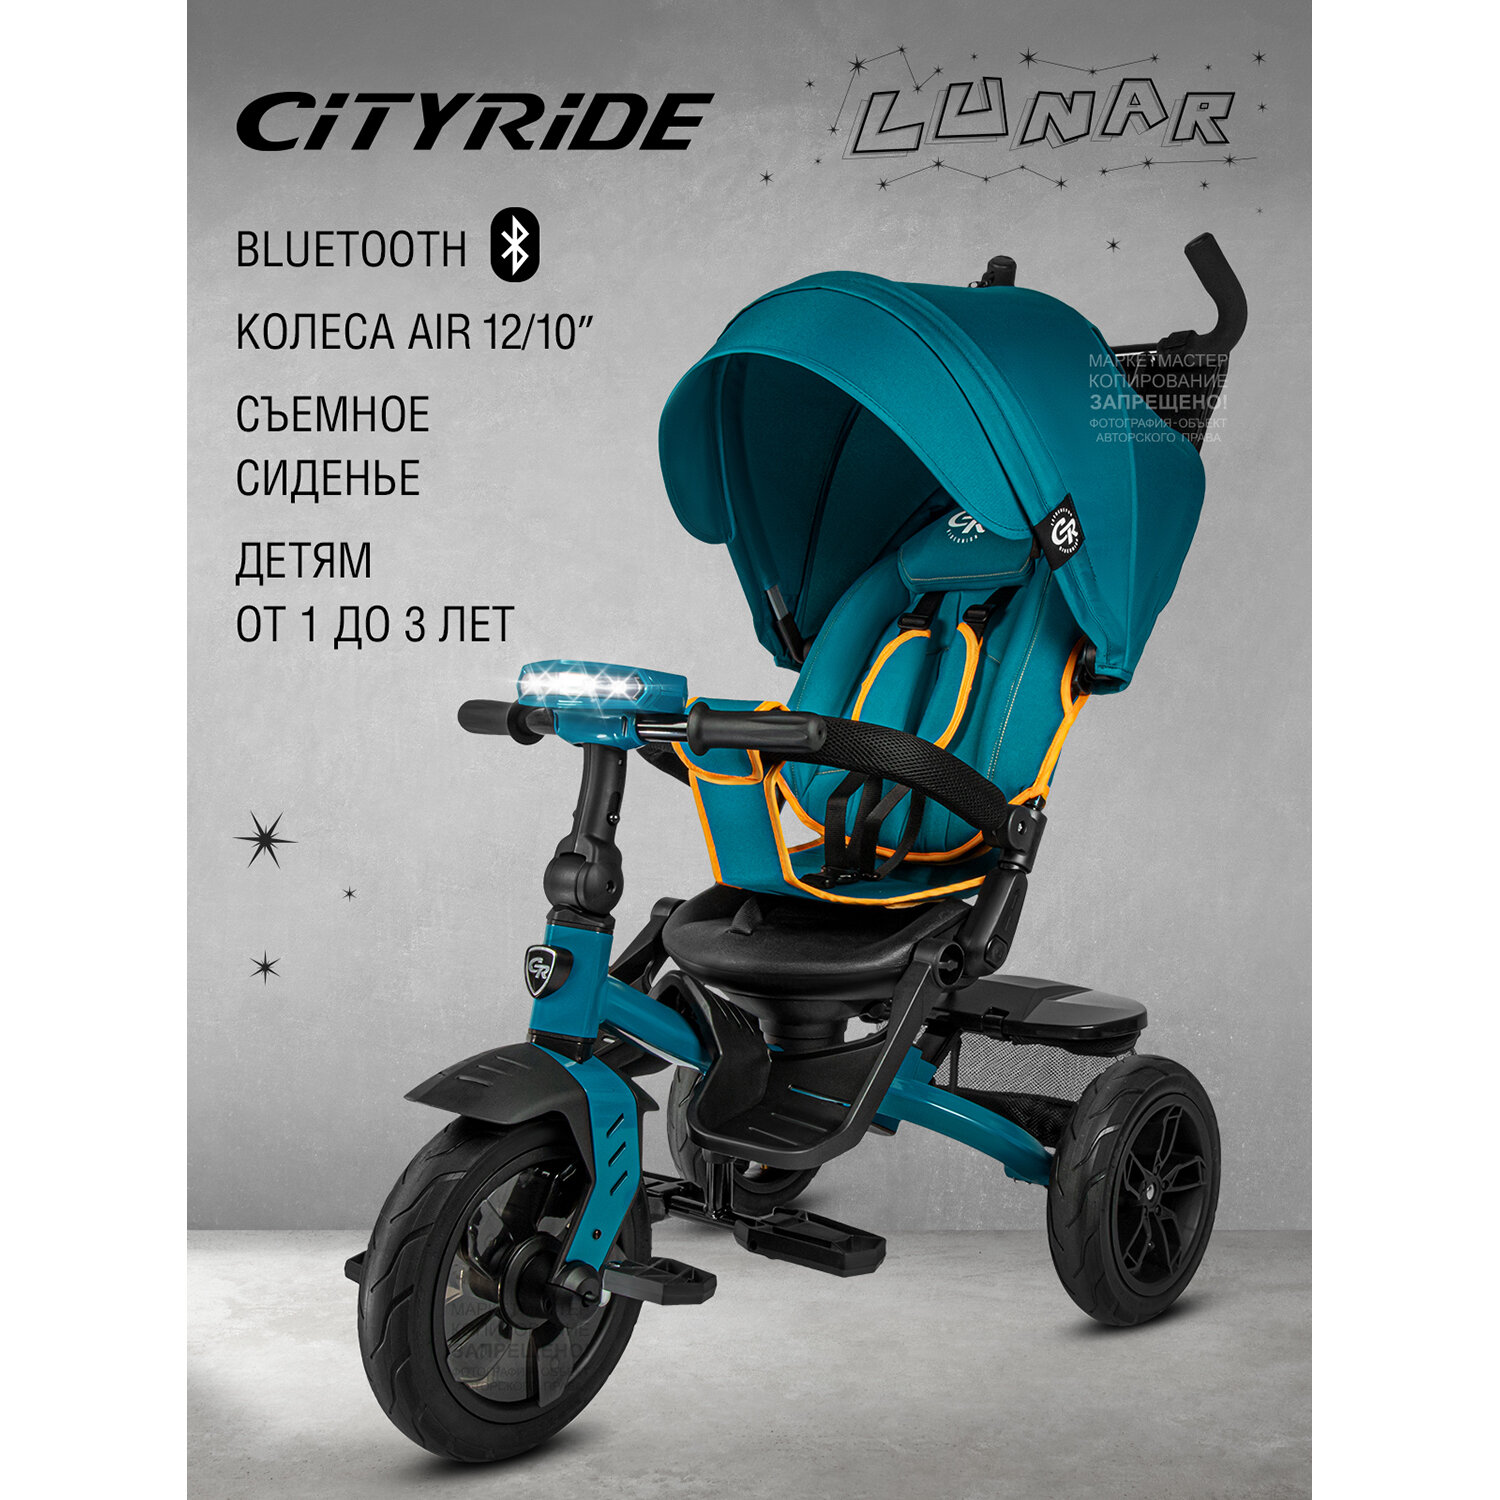 Велосипед детский 3-колесный ТМ CITYRIDE LUNAR, складная крыша, надувные колеса 12"/10", ножной тормоз, поворот сиденья 360◦, свет/звук, CR-B3-10NA